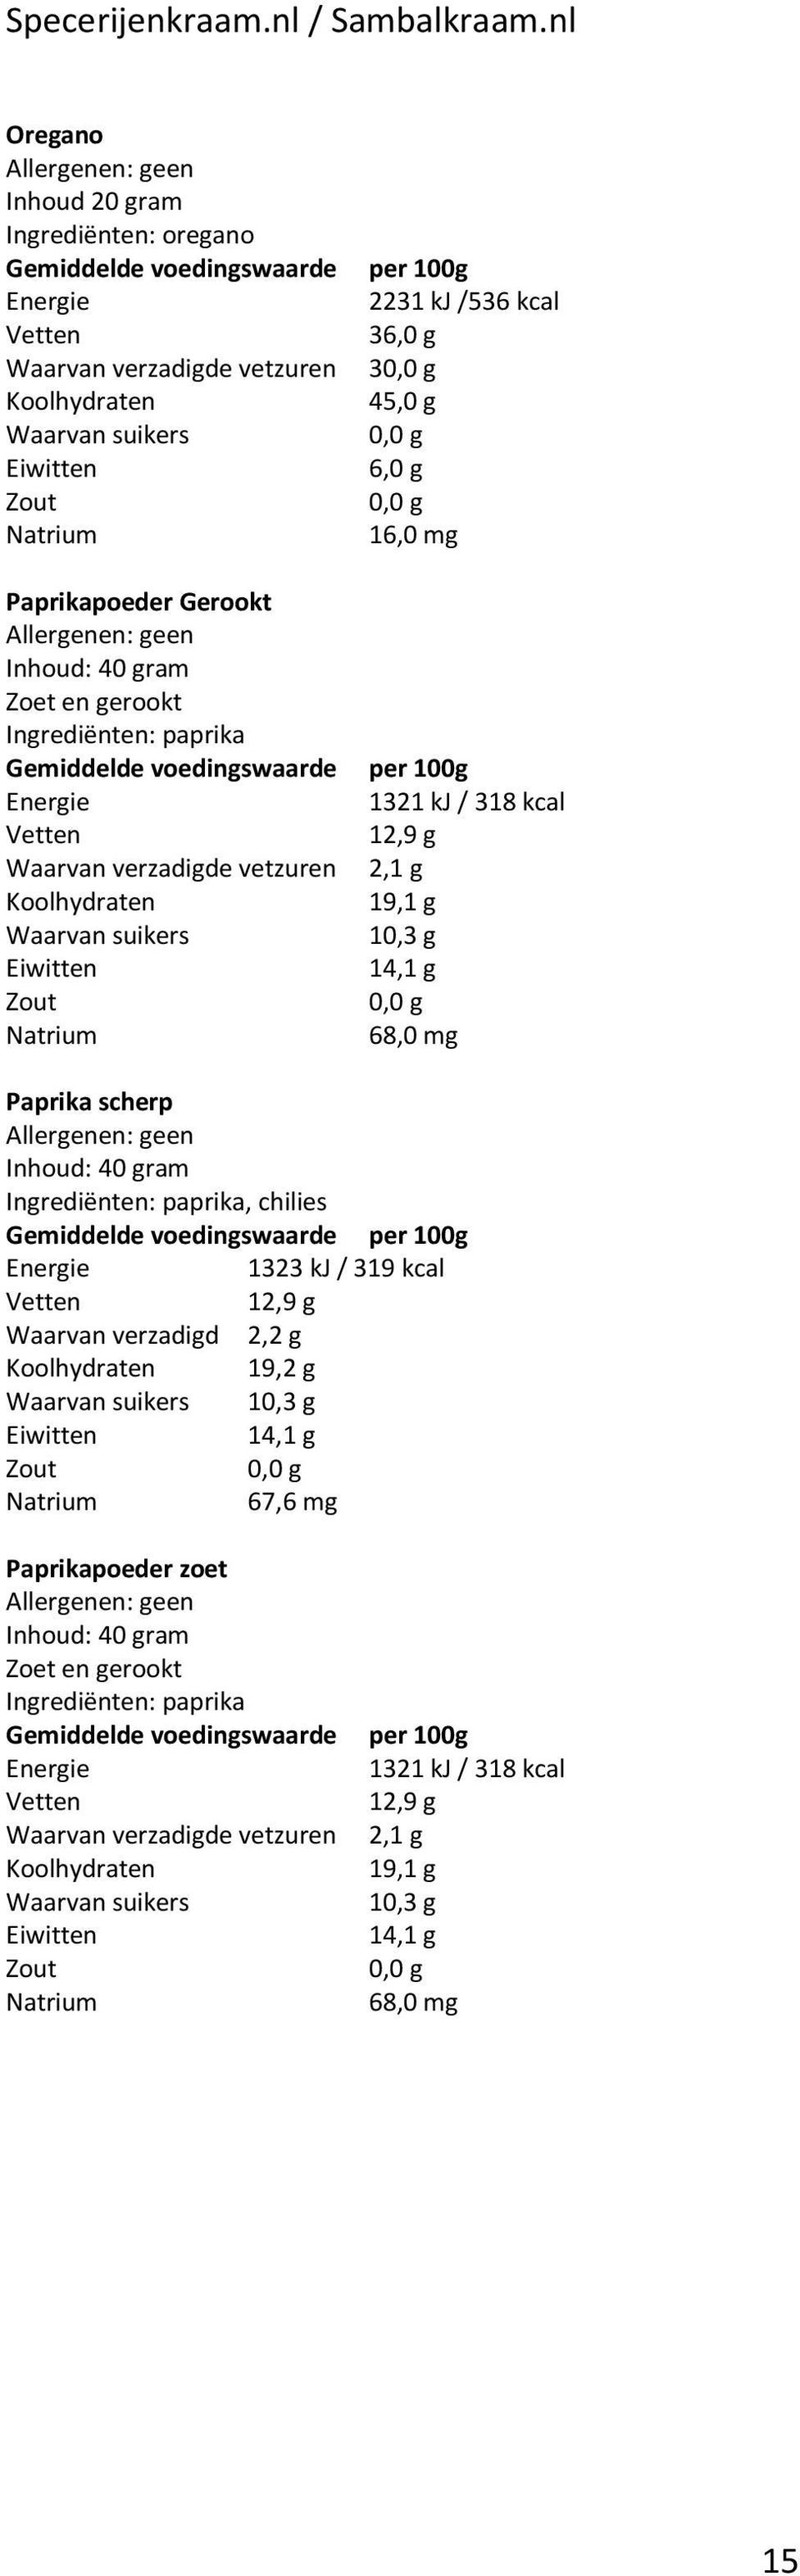 Paprika scherp Ingrediënten: paprika, chilies Gemiddelde voedingswaarde per 100g 1323 kj / 319 kcal ten 12,9 g Waarvan verzadigd 2,2 g 19,2 g 10,3 g 14,1 g 67,6 mg